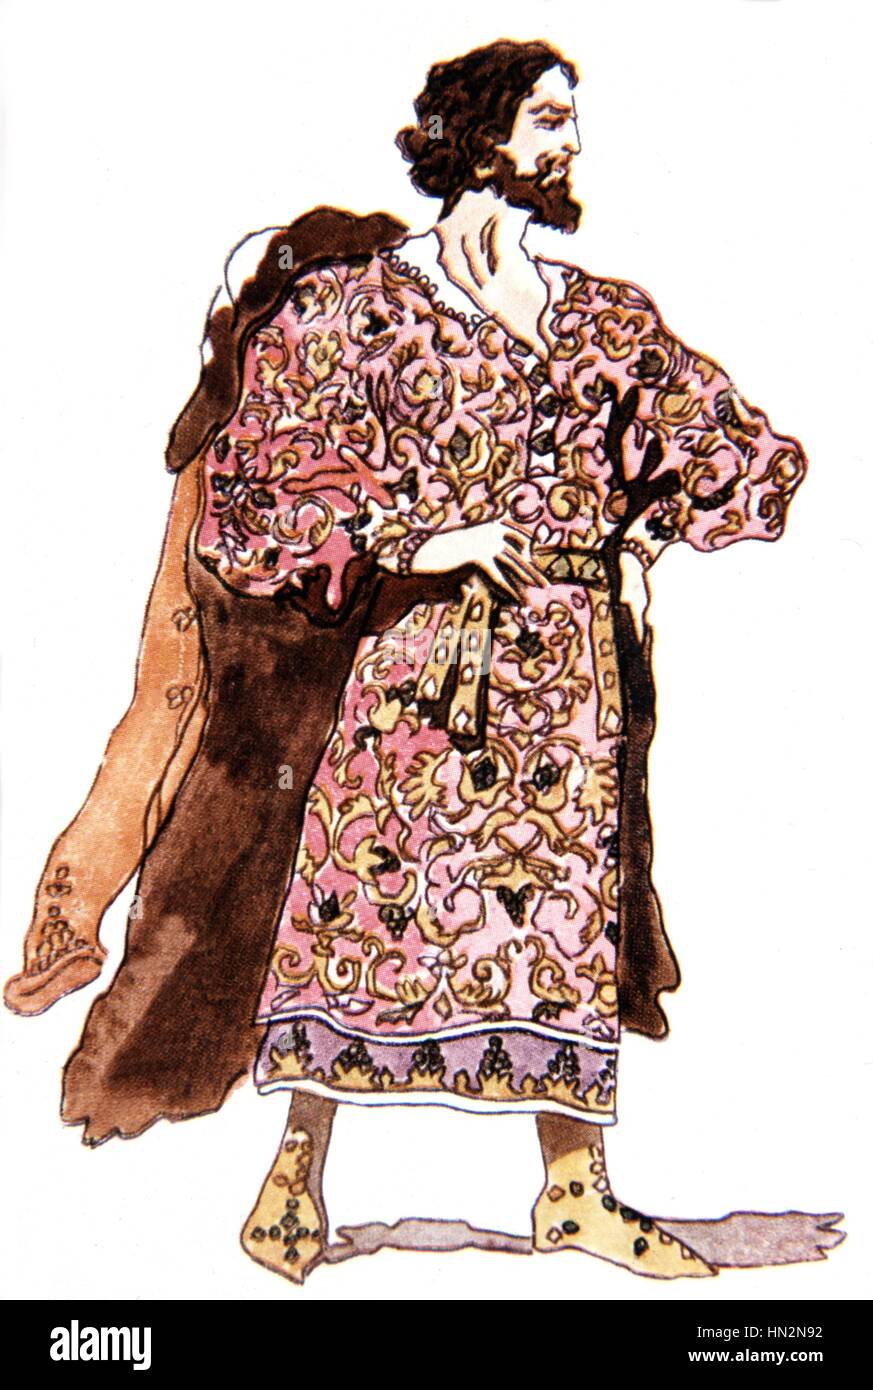 Il principe Igor, opera di Borodin (1833-1887). Acquerello di Korovin: Khan Kotchak costume del 1929 Balletti russi collezione privata Foto Stock